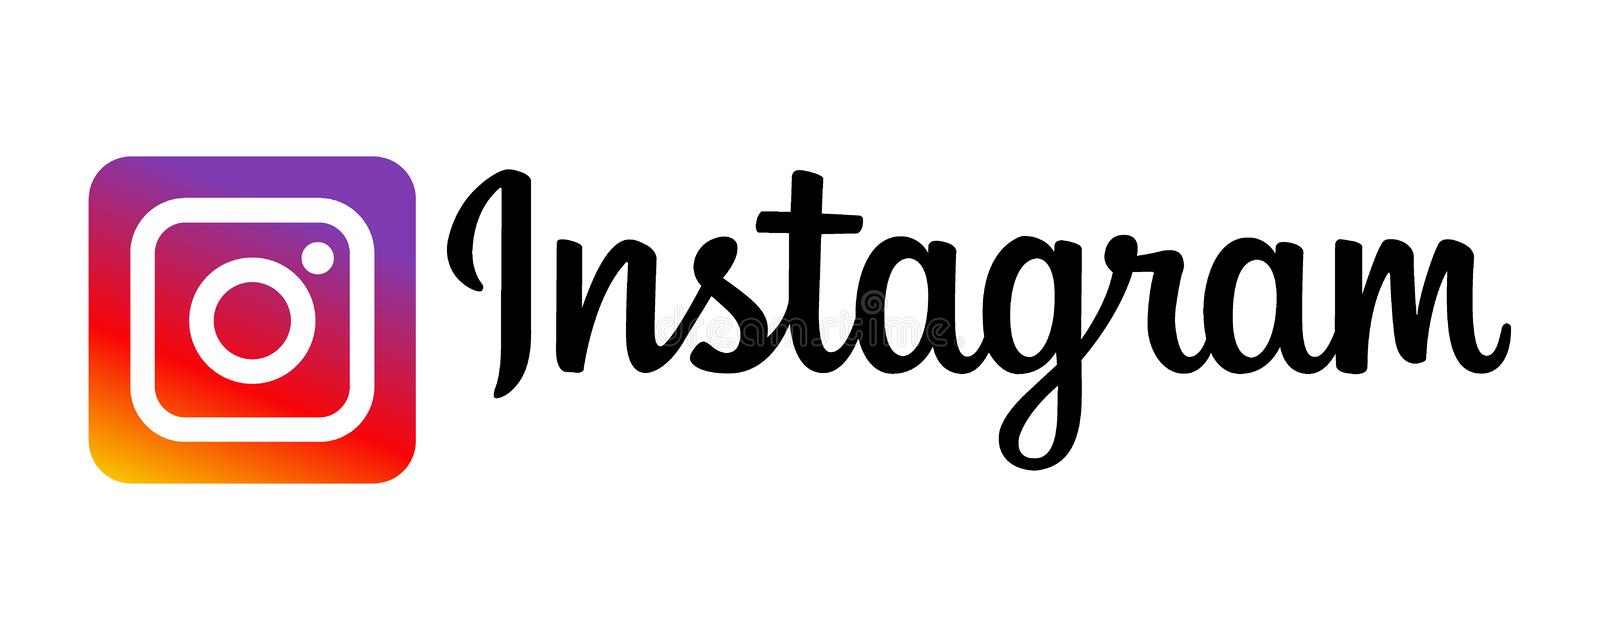 [ 12 Post ] 10k Instagram Likes